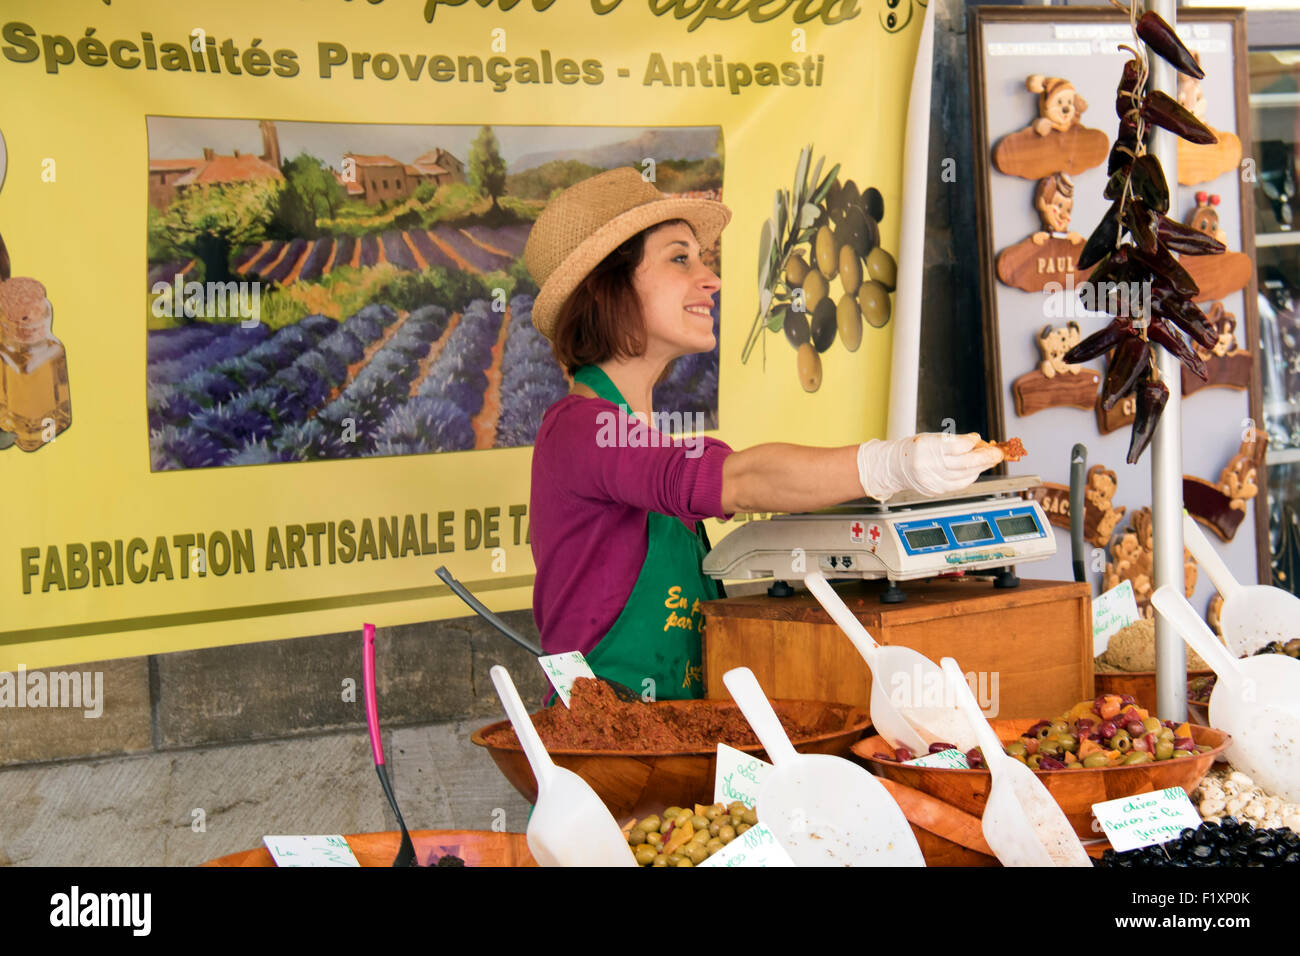 Un stallholder a Sarlat la vendita sul mercato coltivati localmente le olive. Foto Stock